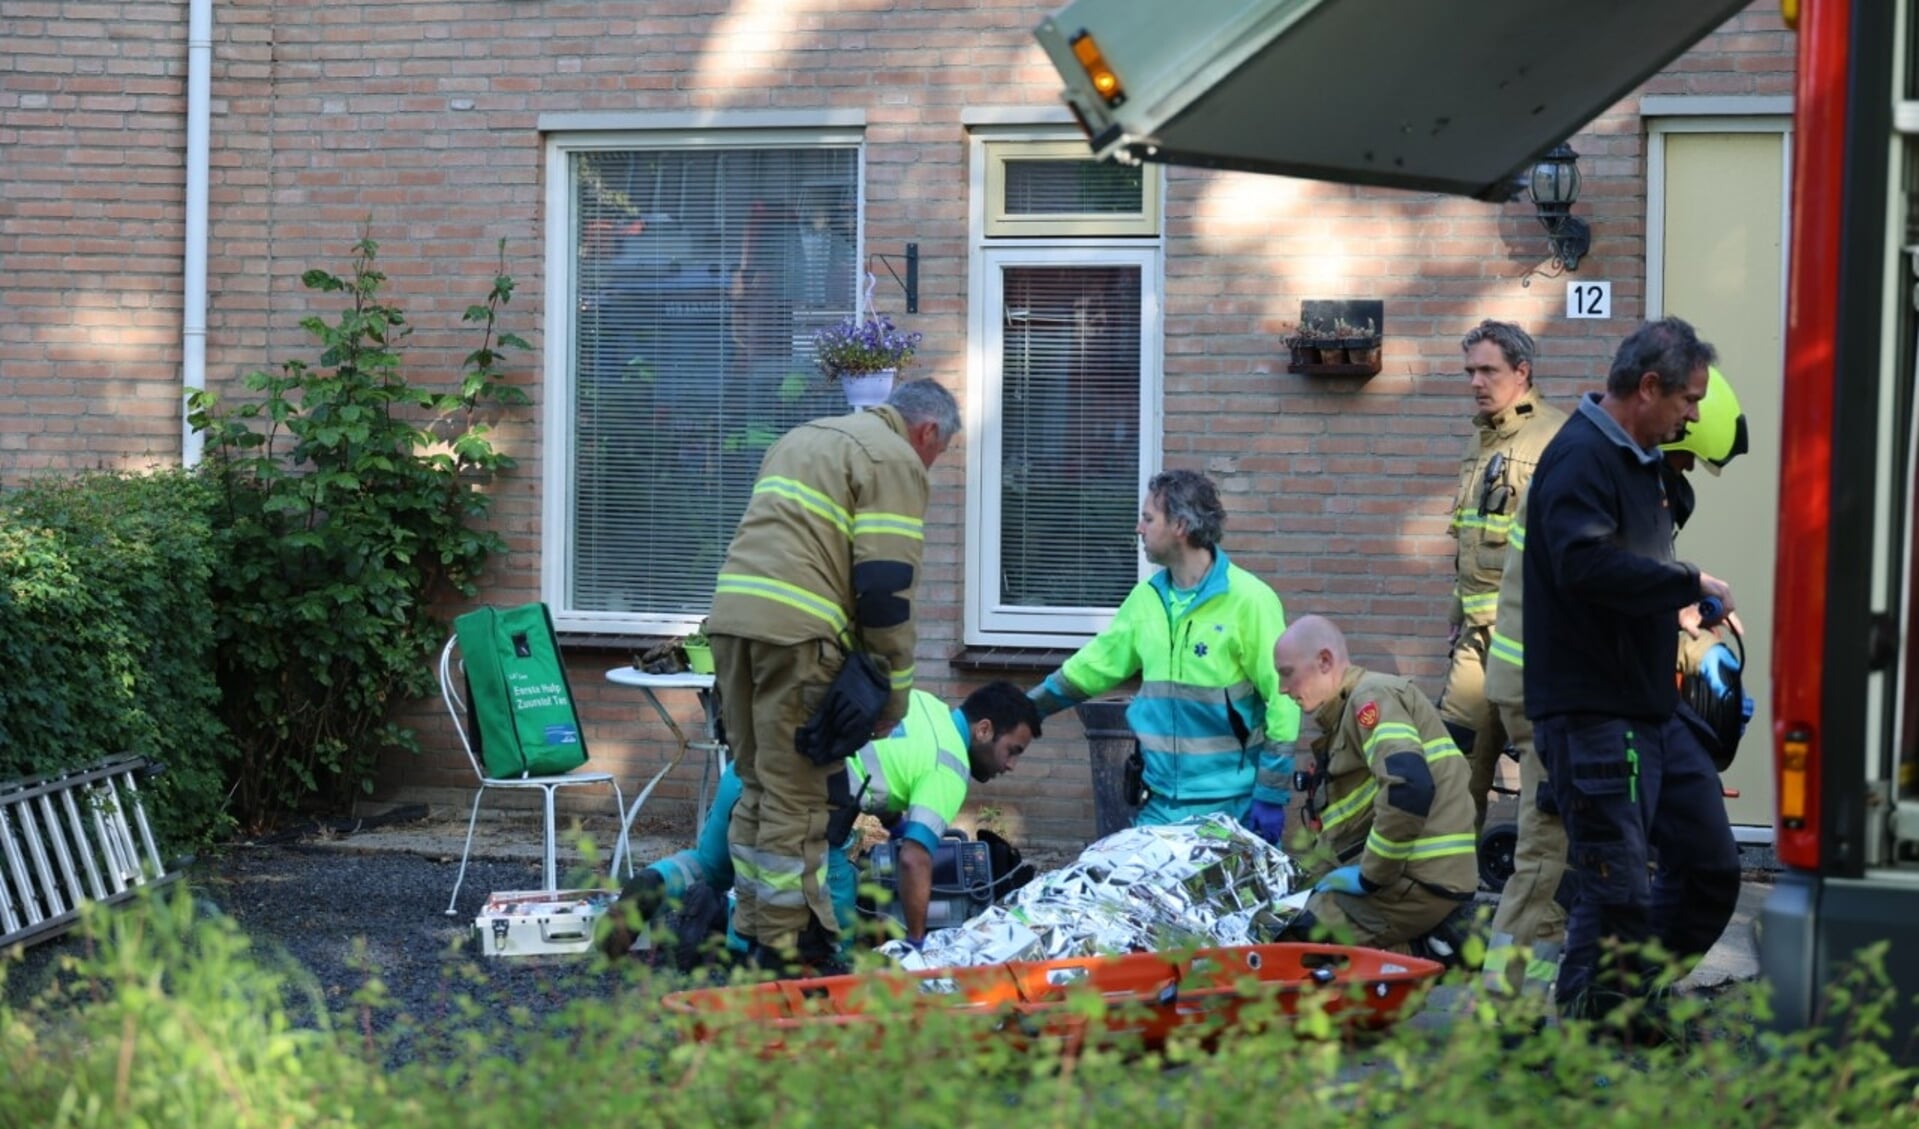 De brandweer is vanmorgen uitgerukt voor een woningbrand aan Het Meerke in Den Bosch waarbij een zwaargewonde is gevallen.